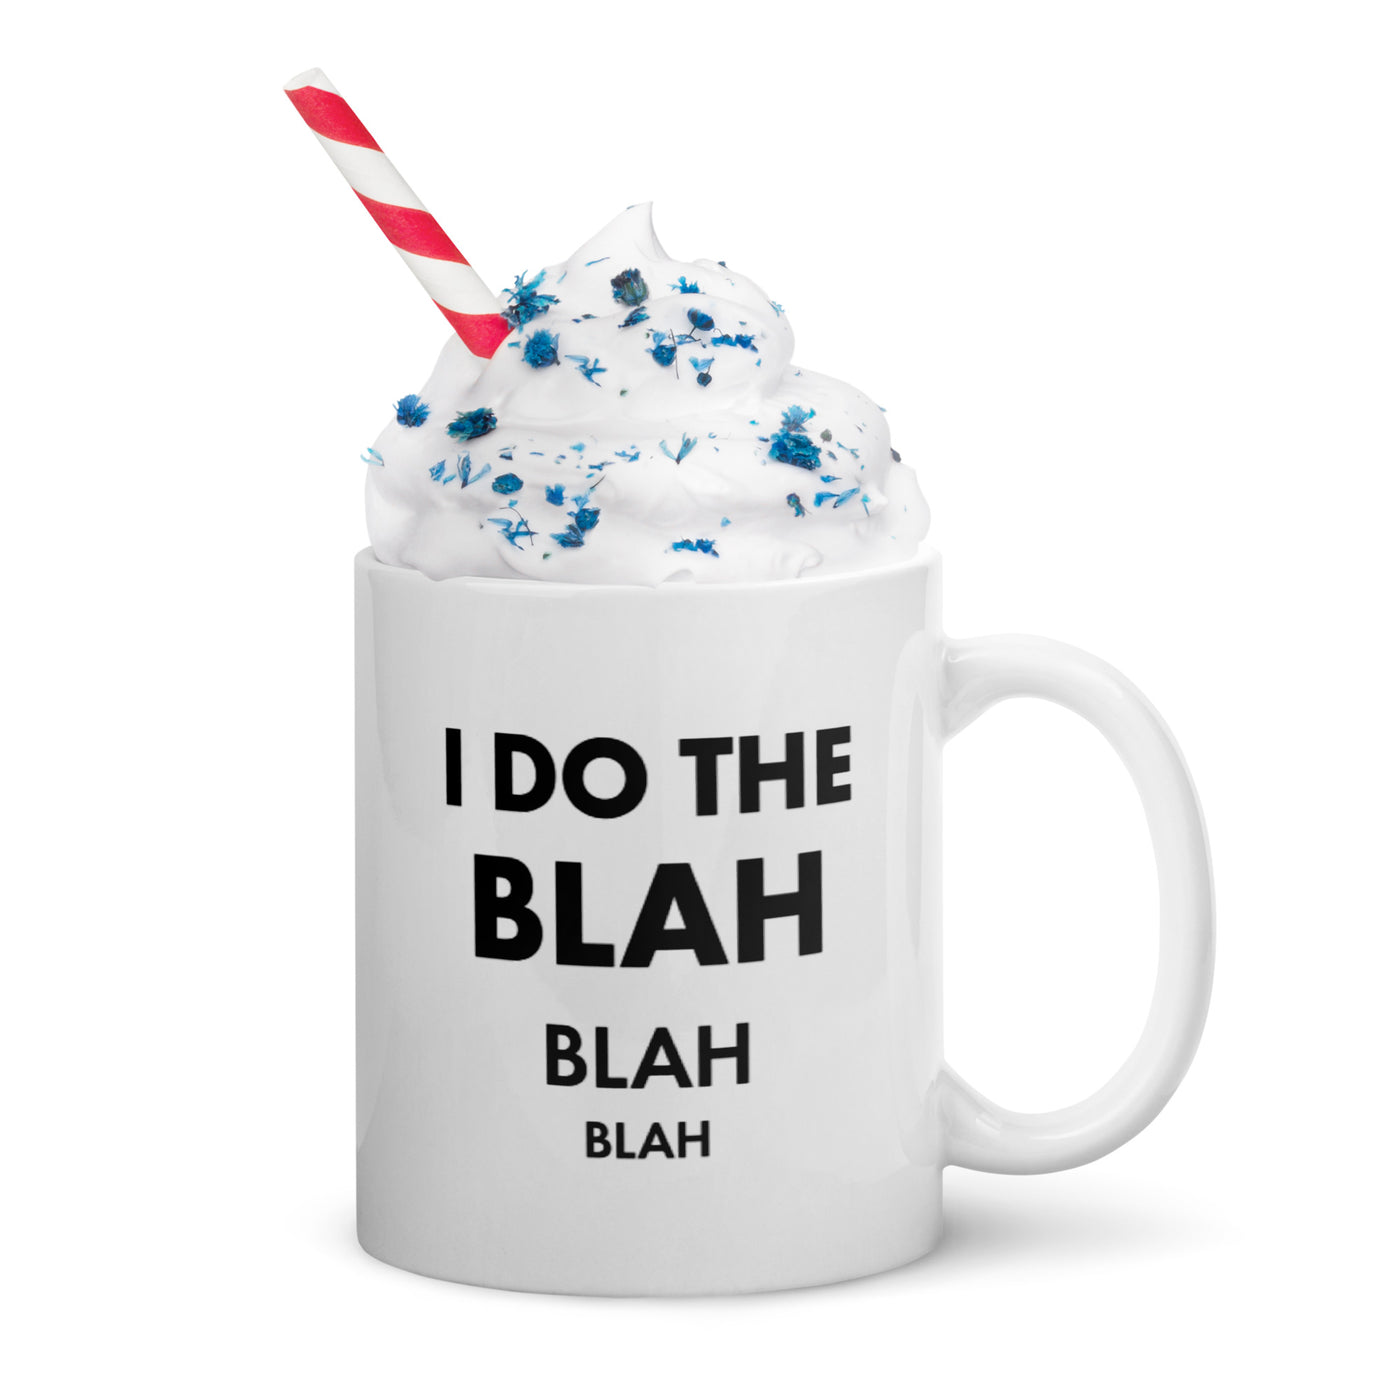 I DO THE BLAH BLAH BLAH White glossy mug